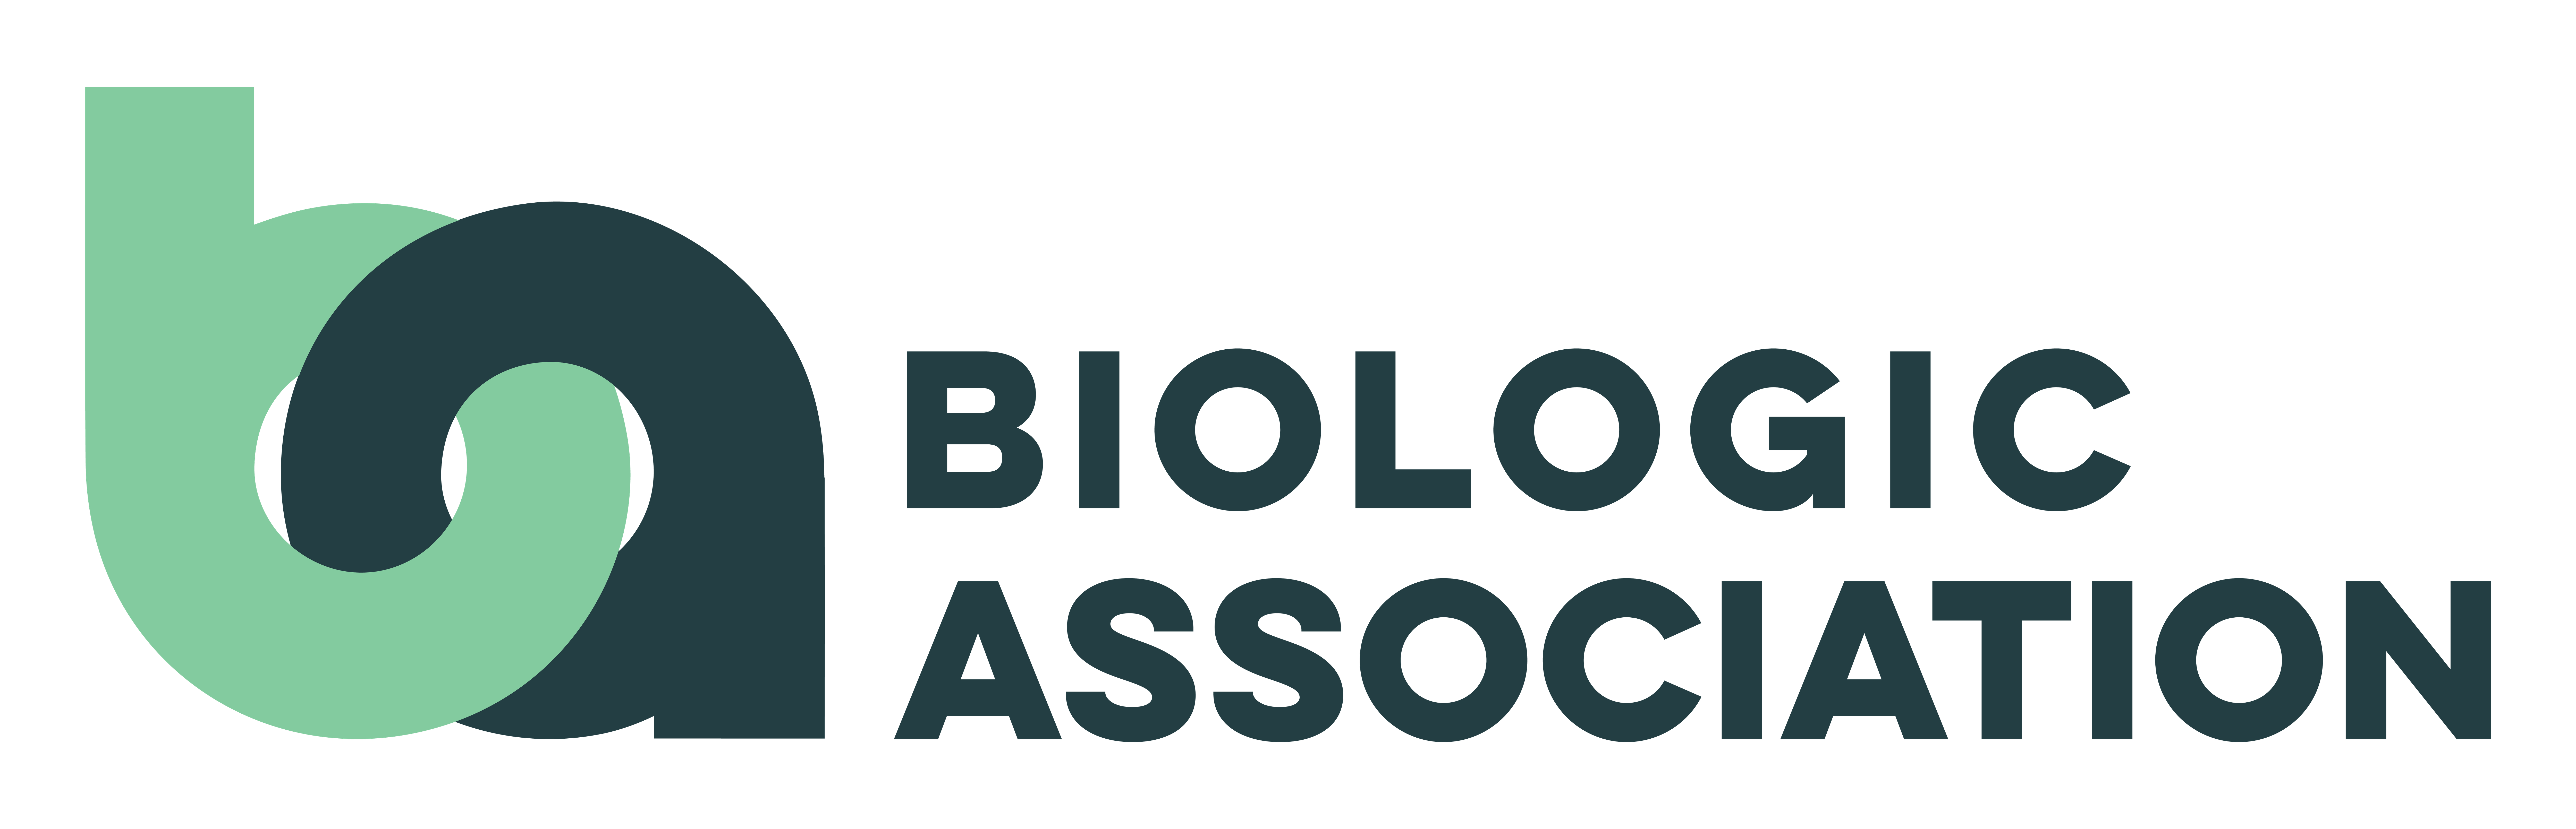 Biologic Association